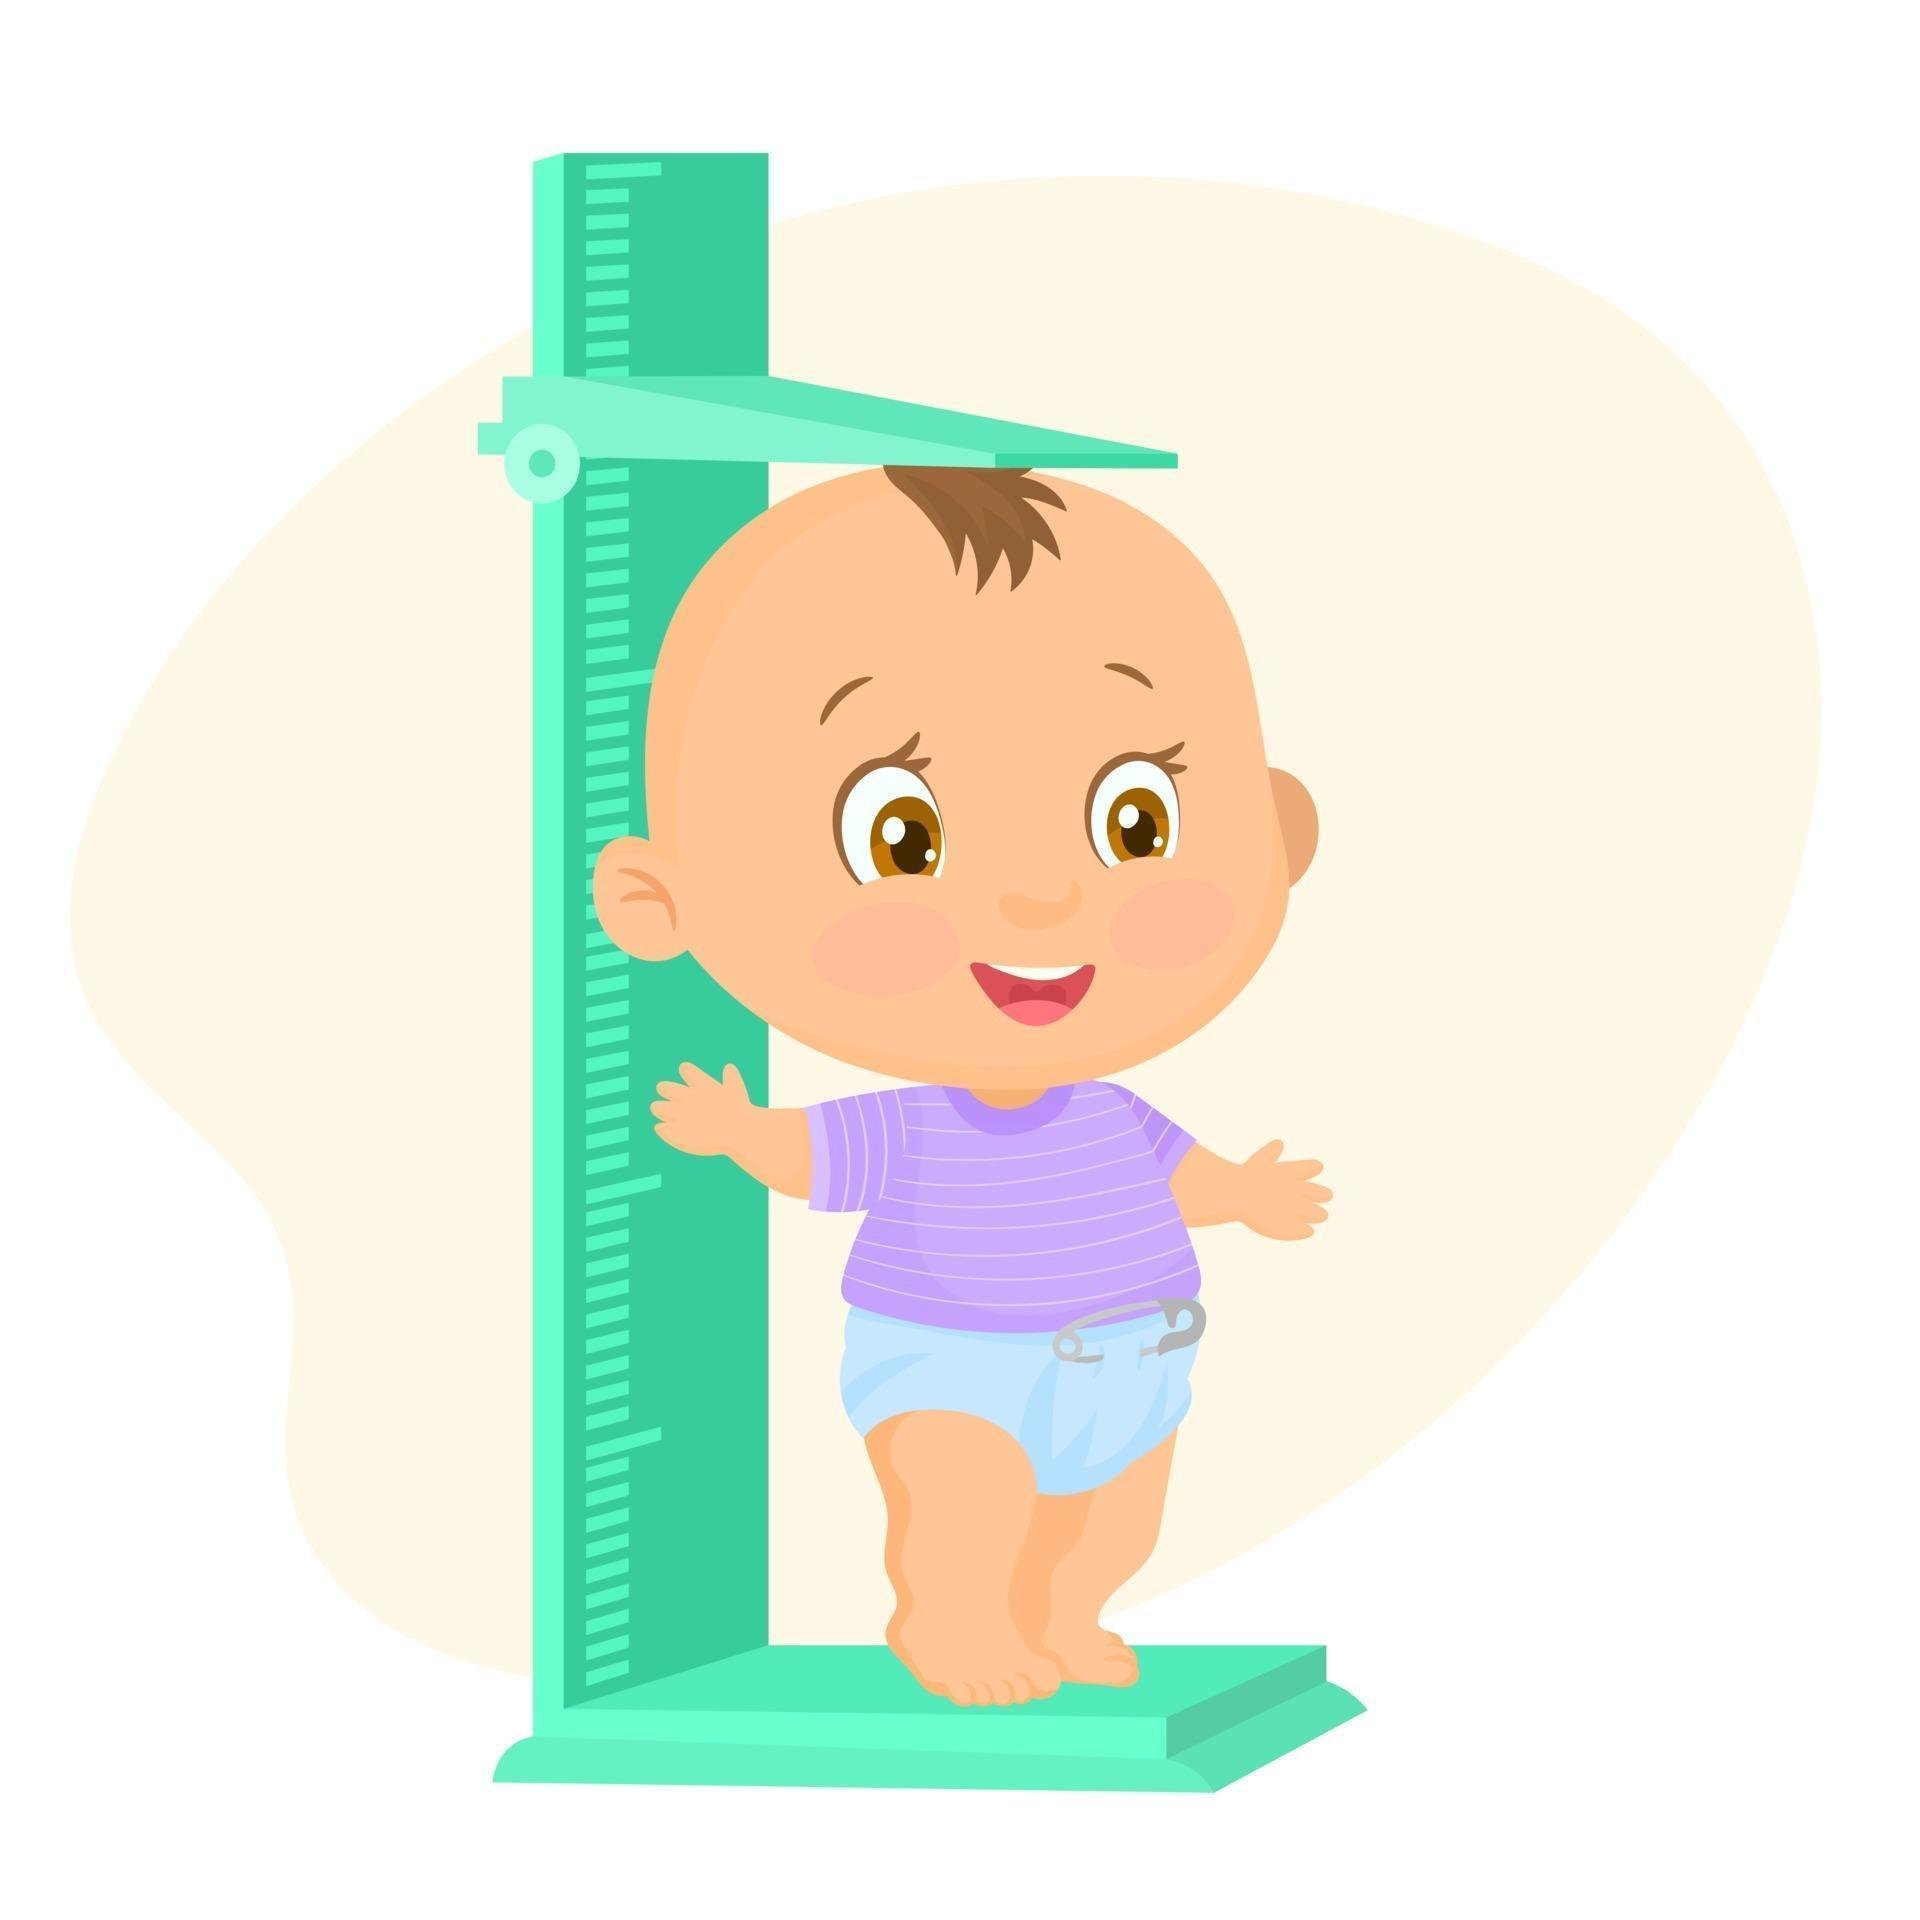 Изменения роста ребенка. Измерение роста ребенка. Измеритель роста для детей. Антропометрия детей. Антропометрия детей в саду.